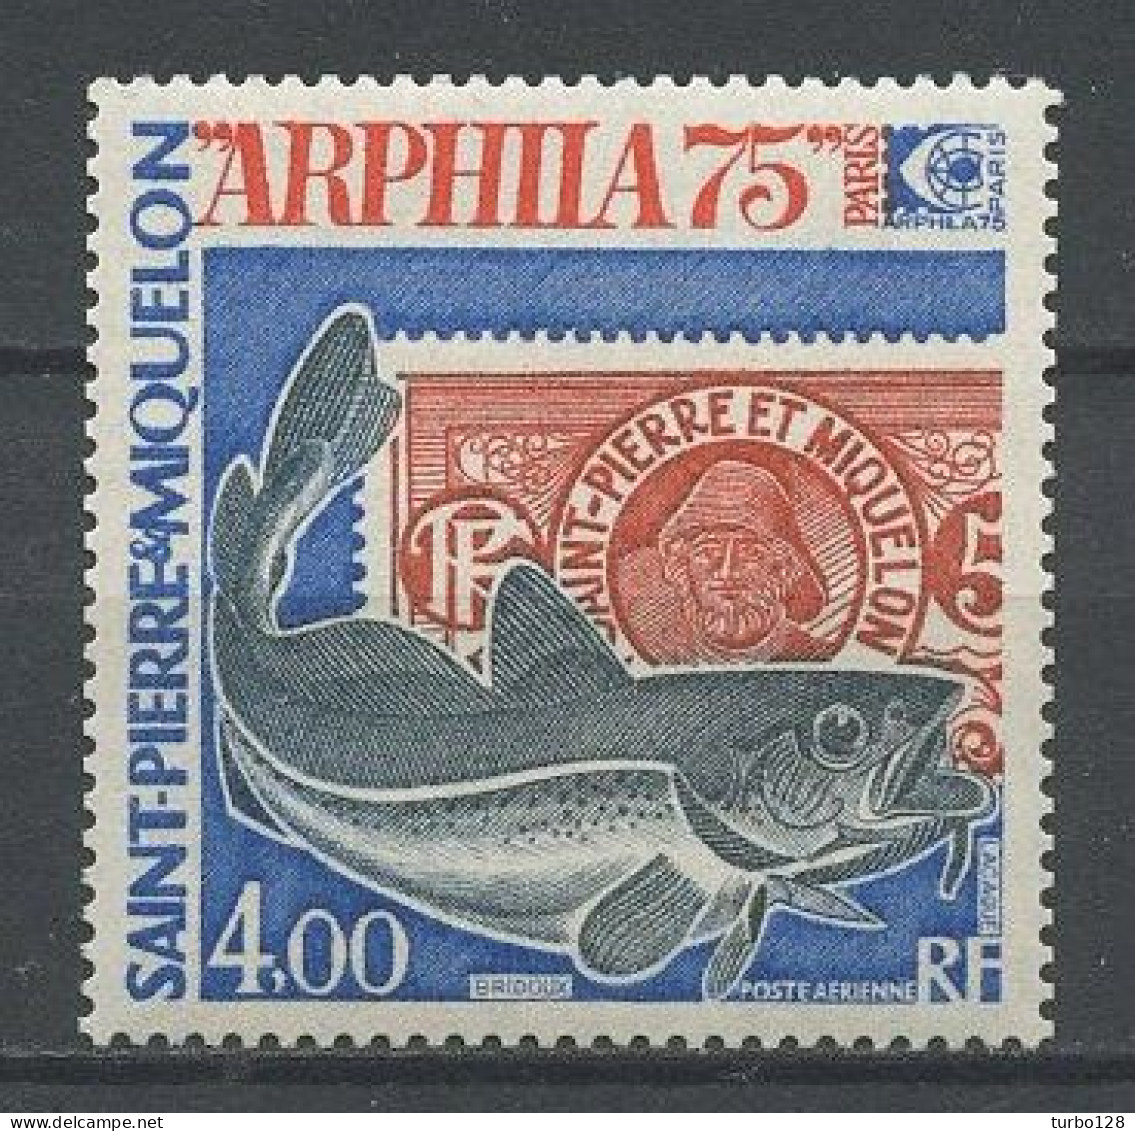 SPM MIQUELON 1975 PA N° 60 ** Neuf MNH Superbe C 25,20 € ARPHILA 75 Poissons Fishes Animaux Exposition Philatélique - Neufs